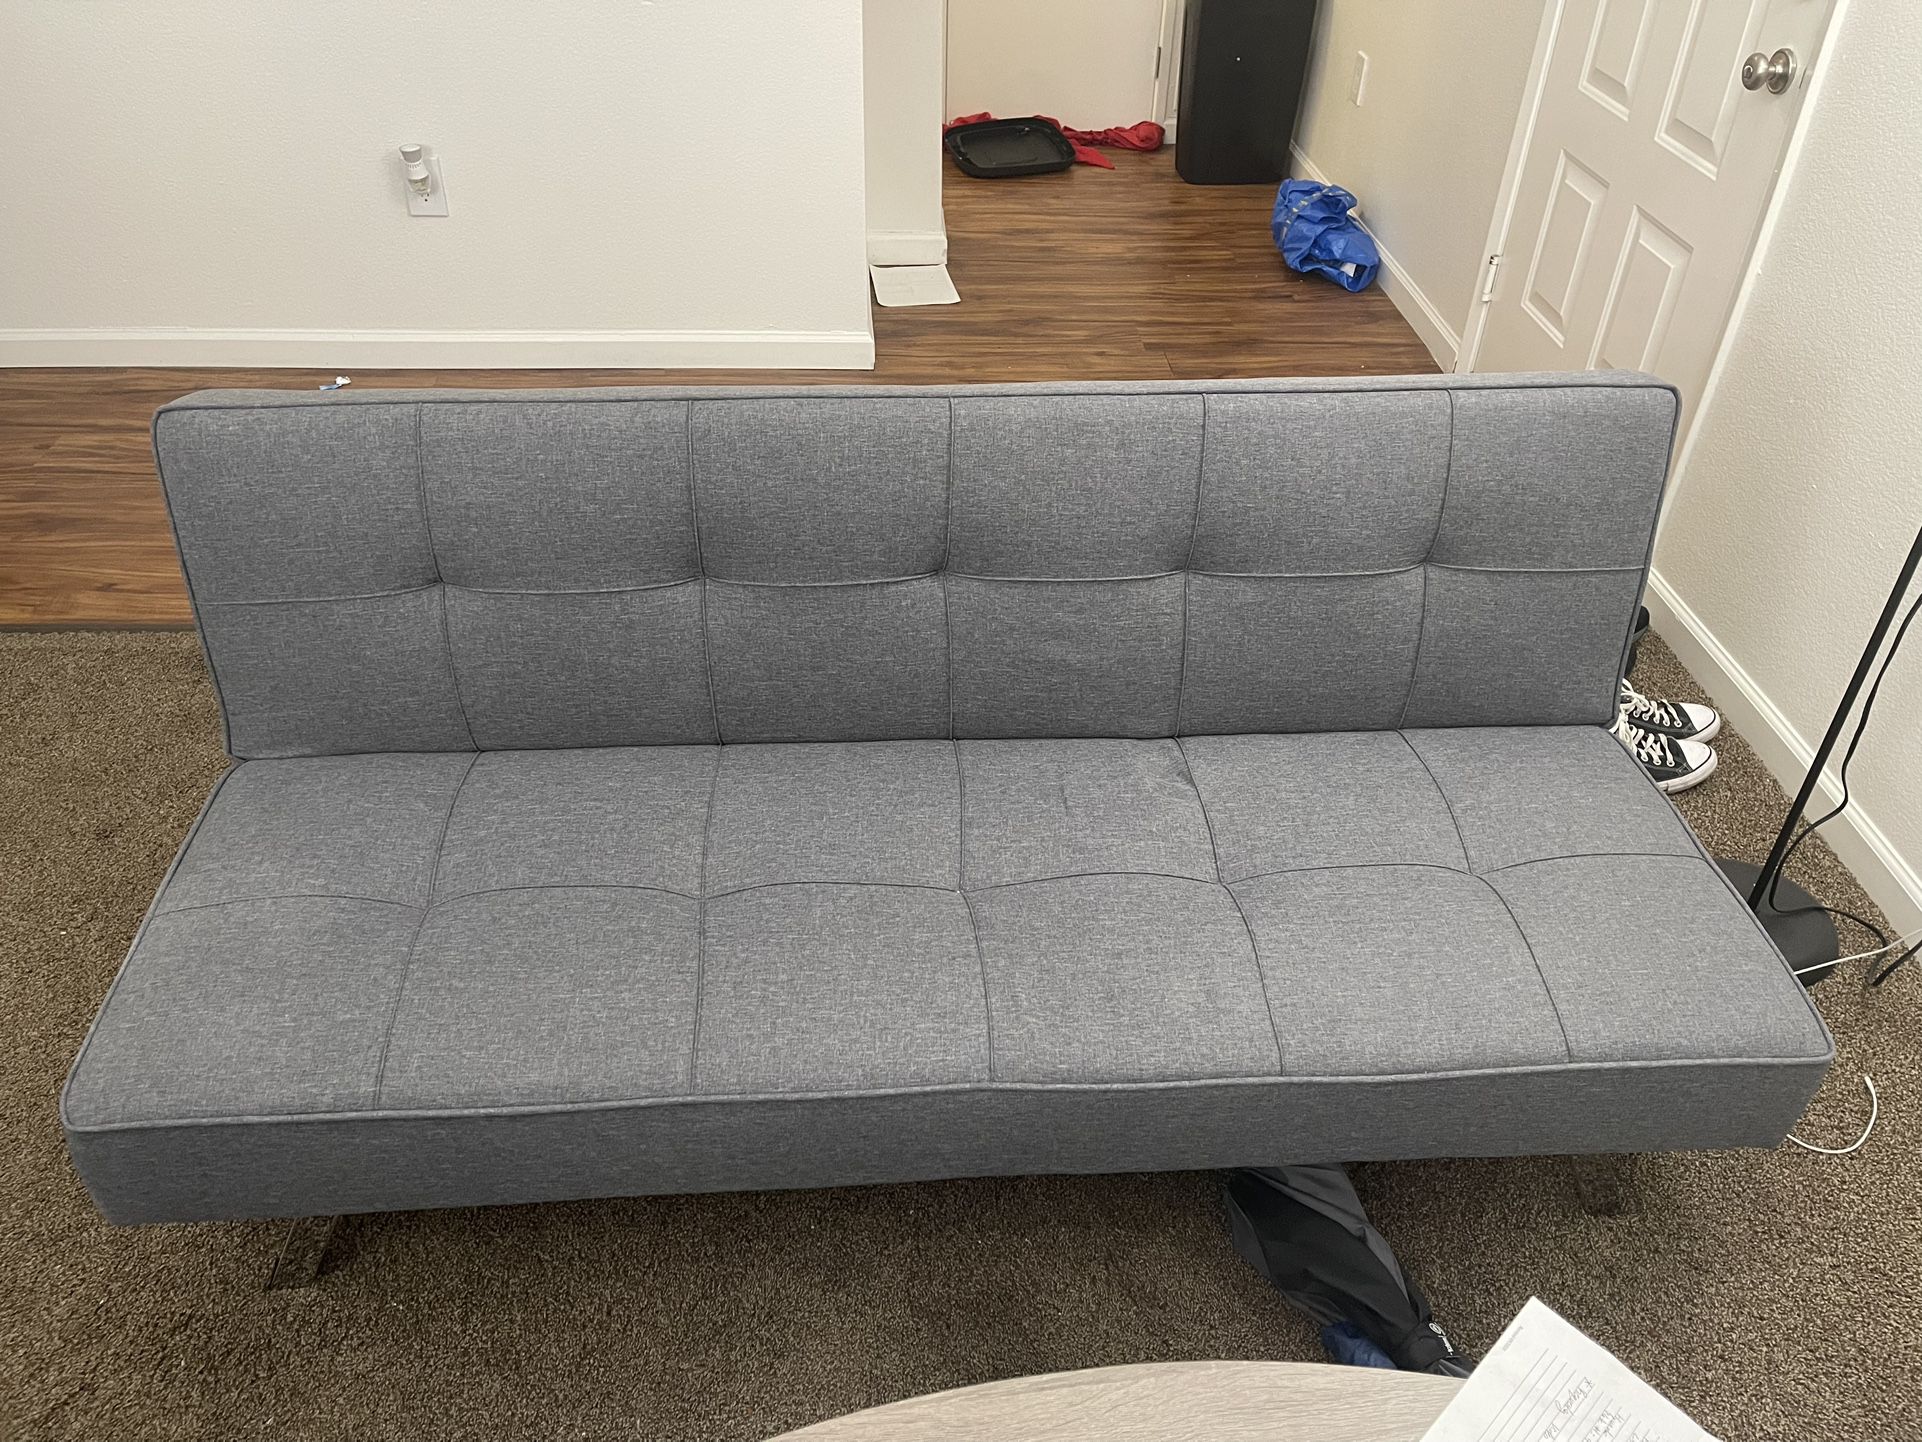 IKEA Sleeper Sofa Futon